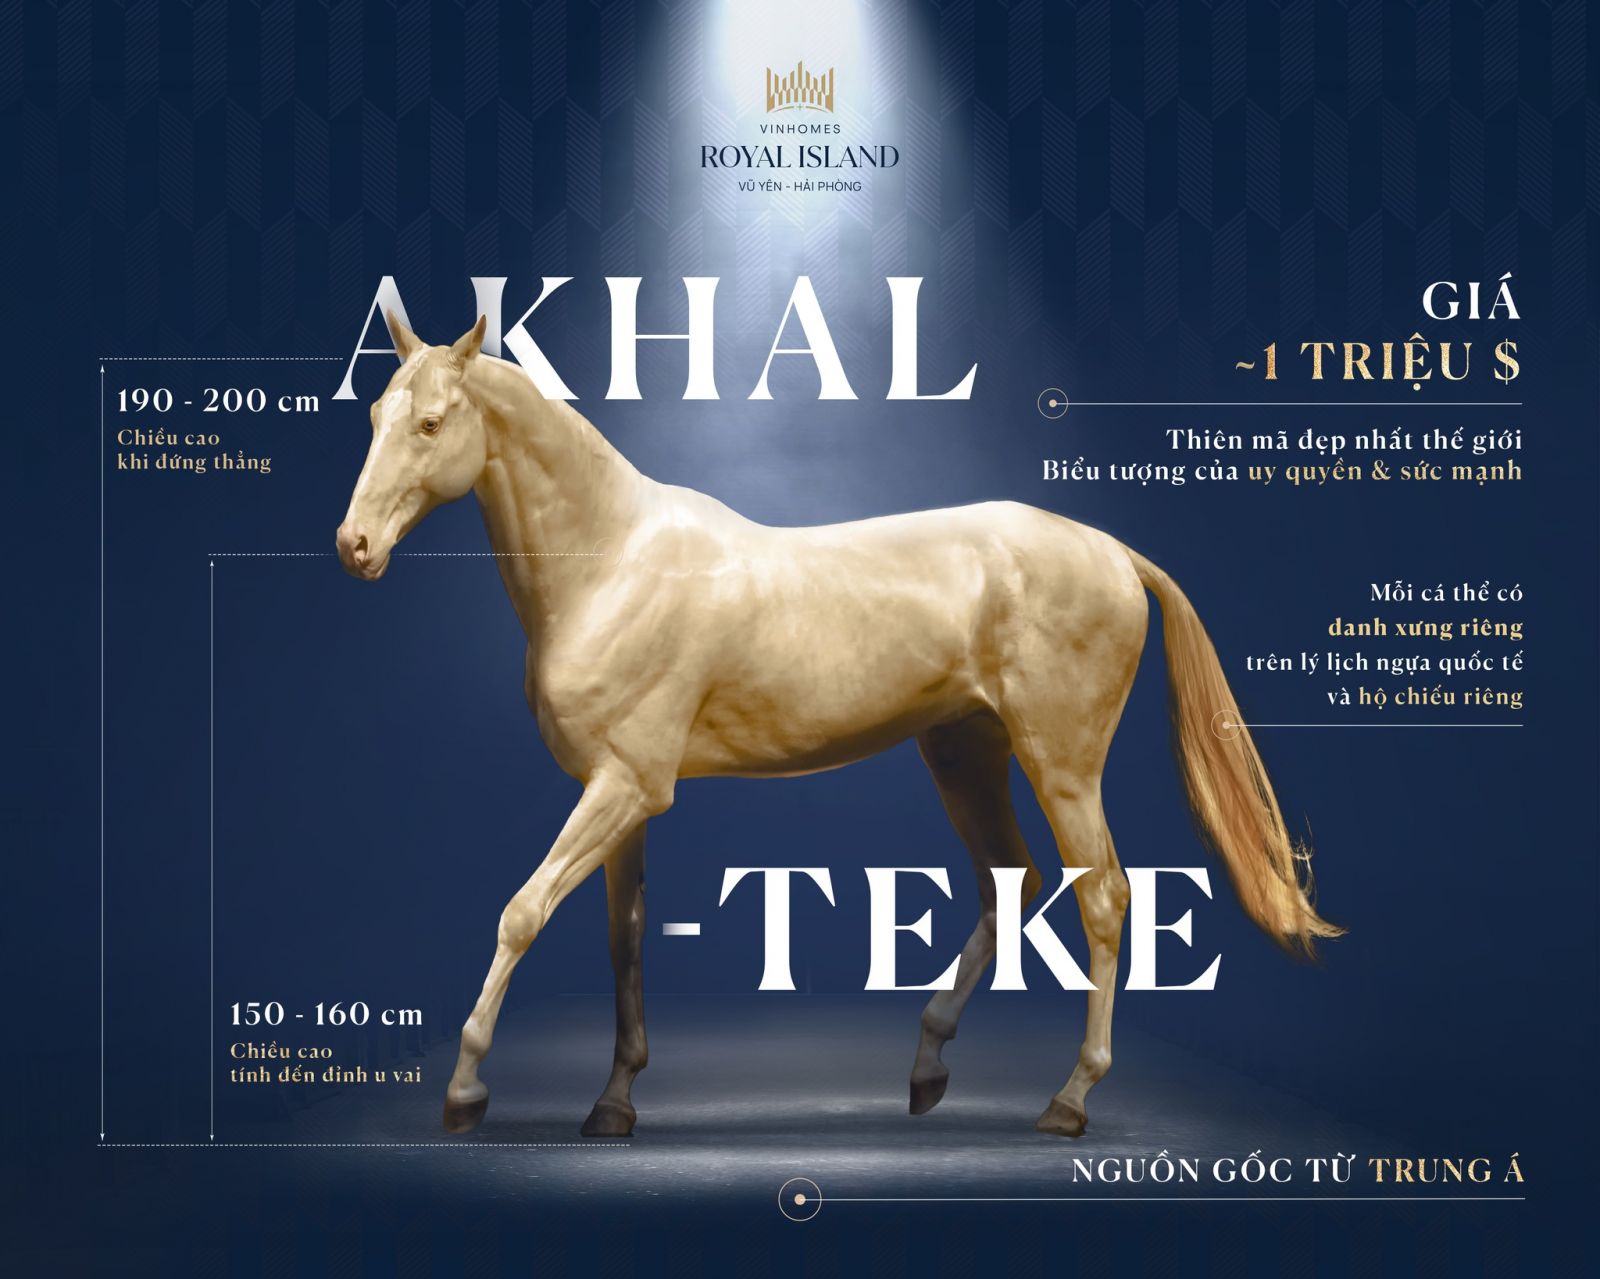 Bộ sưu tập ngựa ở Vinhomes Royal Island vừa được bổ sung thêm giống Akhal Teke quý hiếm bậc nhất thế giới 